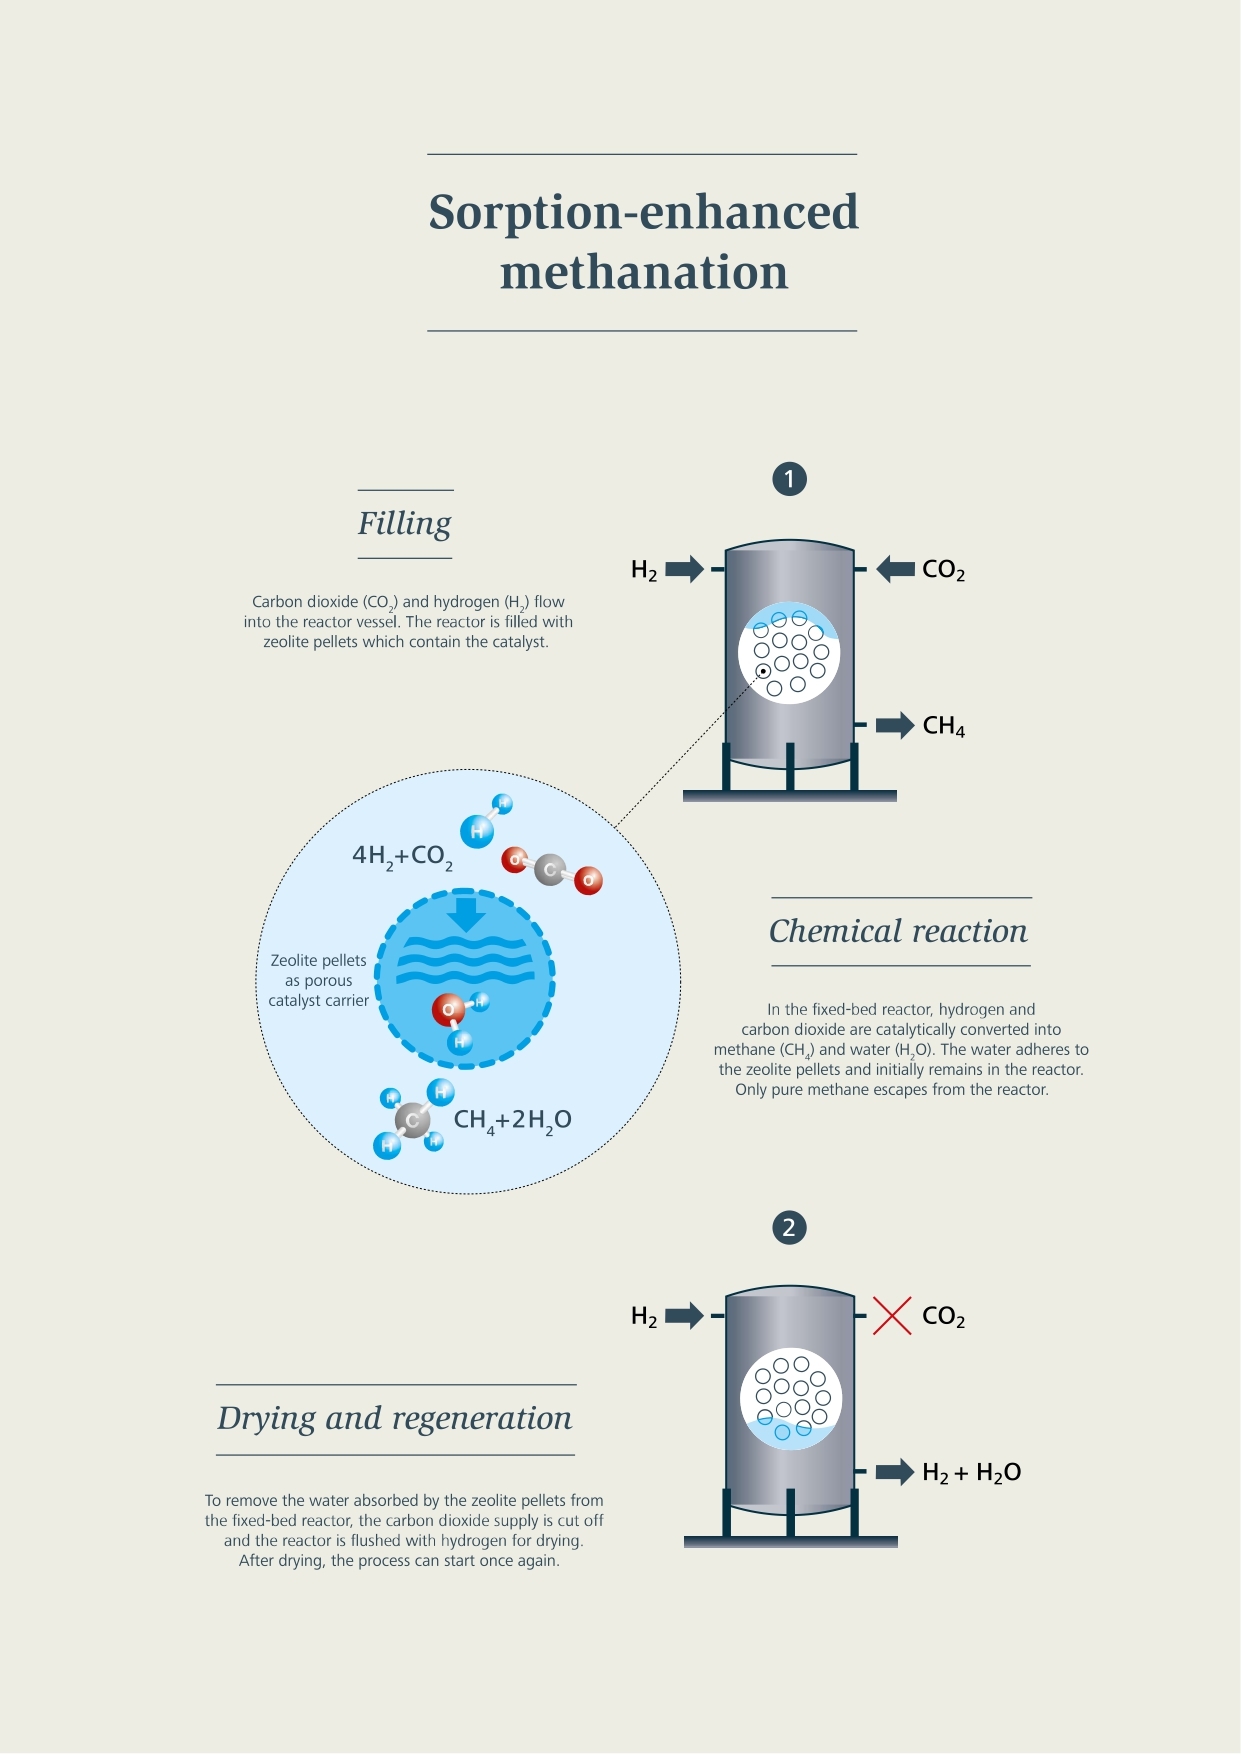 Синтетички метан: Процес метанације са апсорпцијом: пуњење, хемијска реакција, сушење и регенерација, итд.